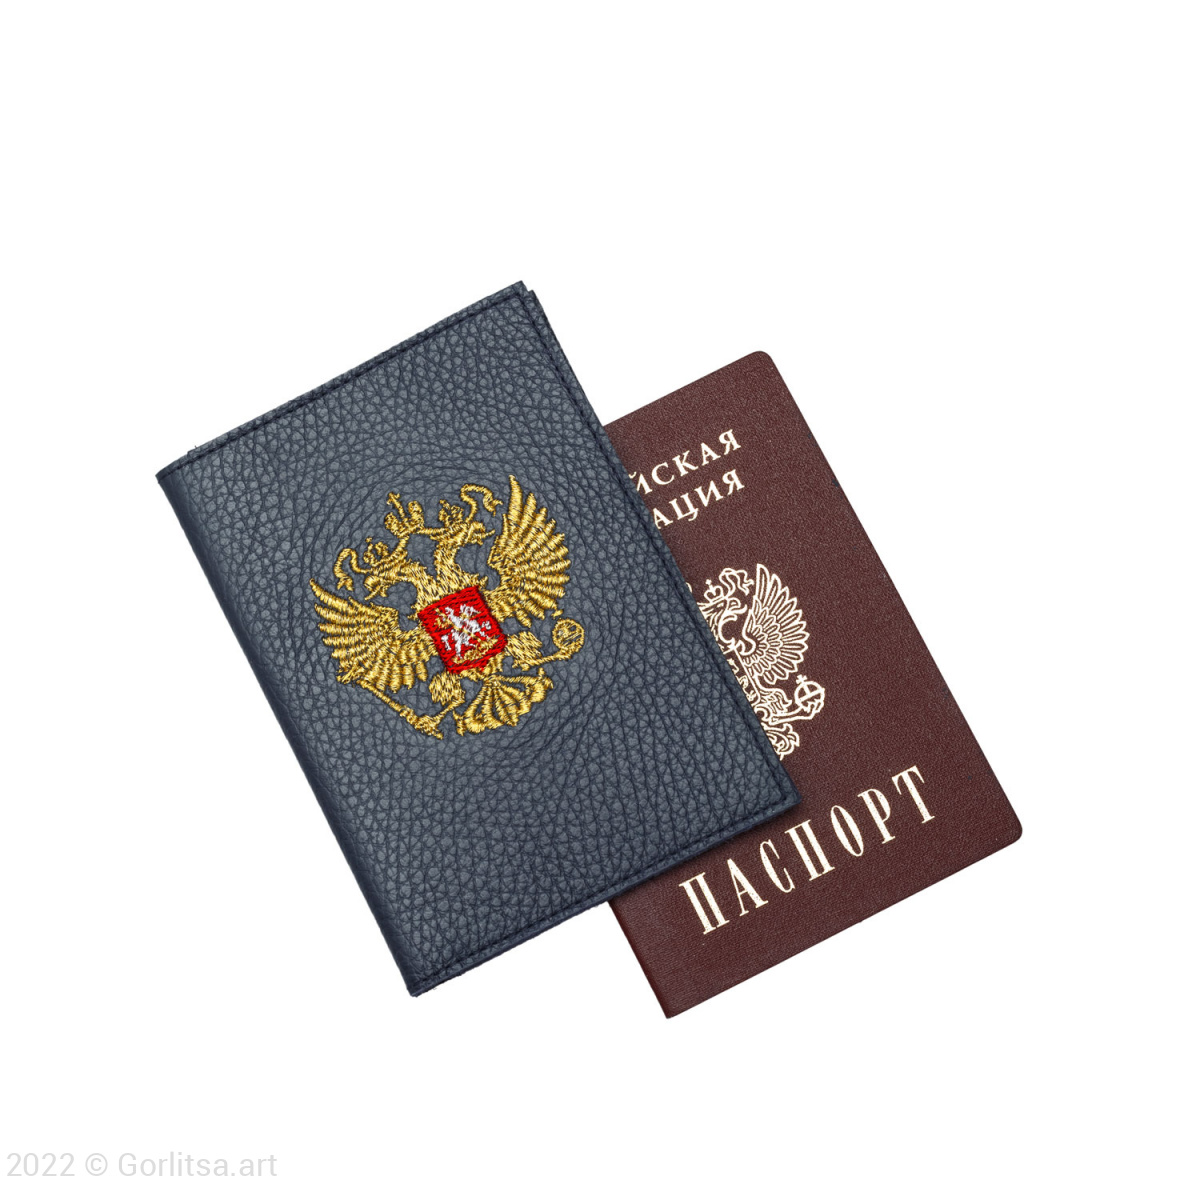 Обложка для паспорта «Герб» 60131-1-3, кожа, цвет: синий/ золото  нат. кожа Никифоровская мануфактура